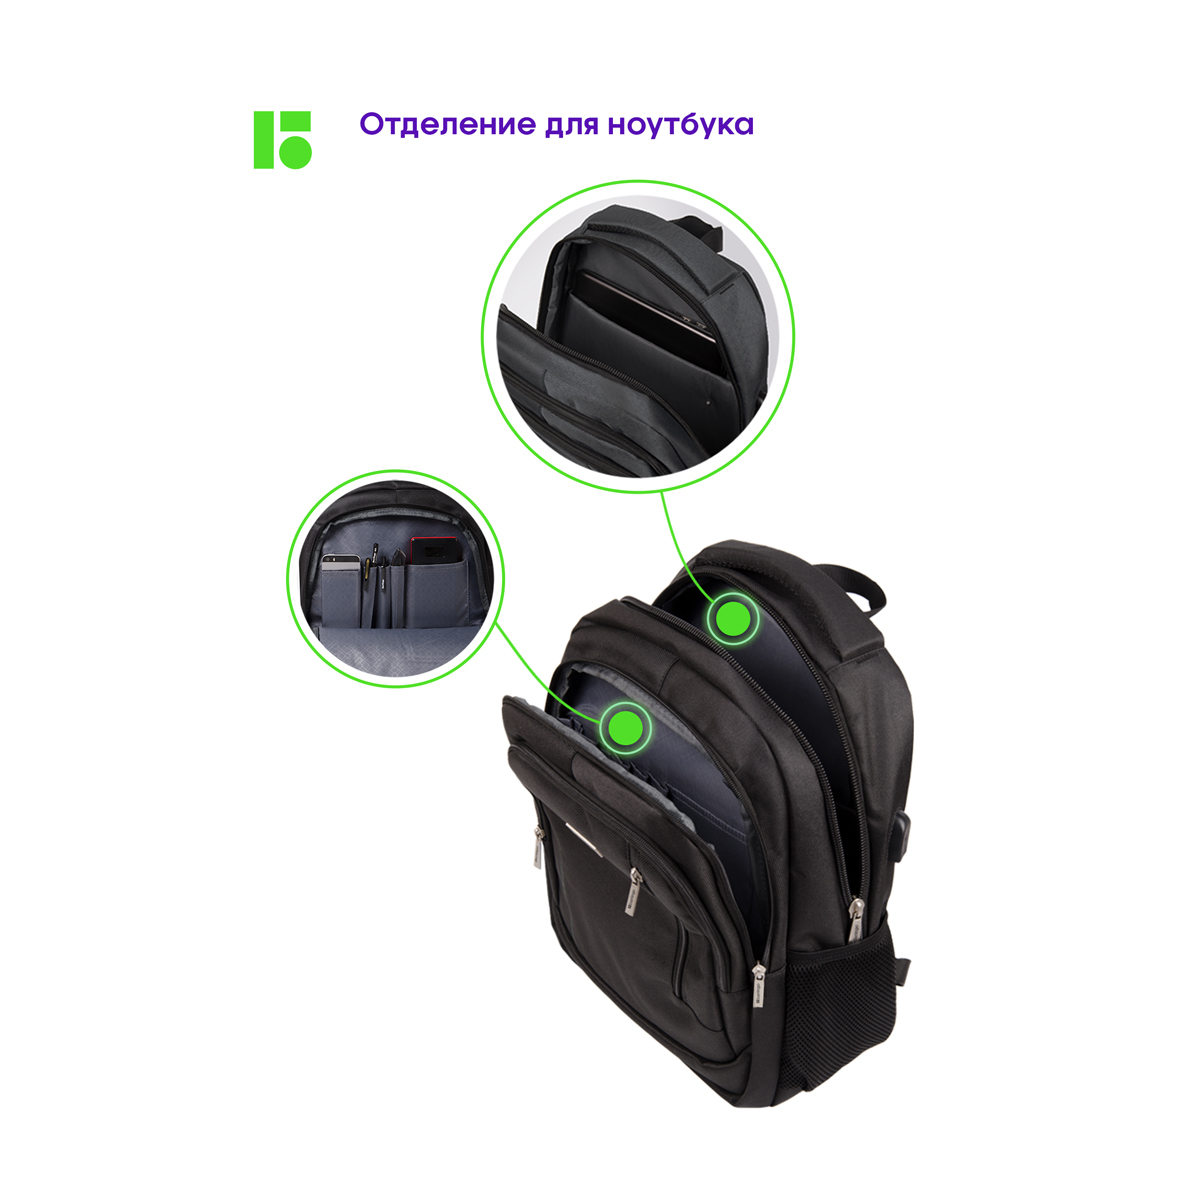 Рюкзак Berlingo City Comfort black 42*29*17см, 3 отделения, 3 кармана, отделение для ноутбука, USB (Вид 3)